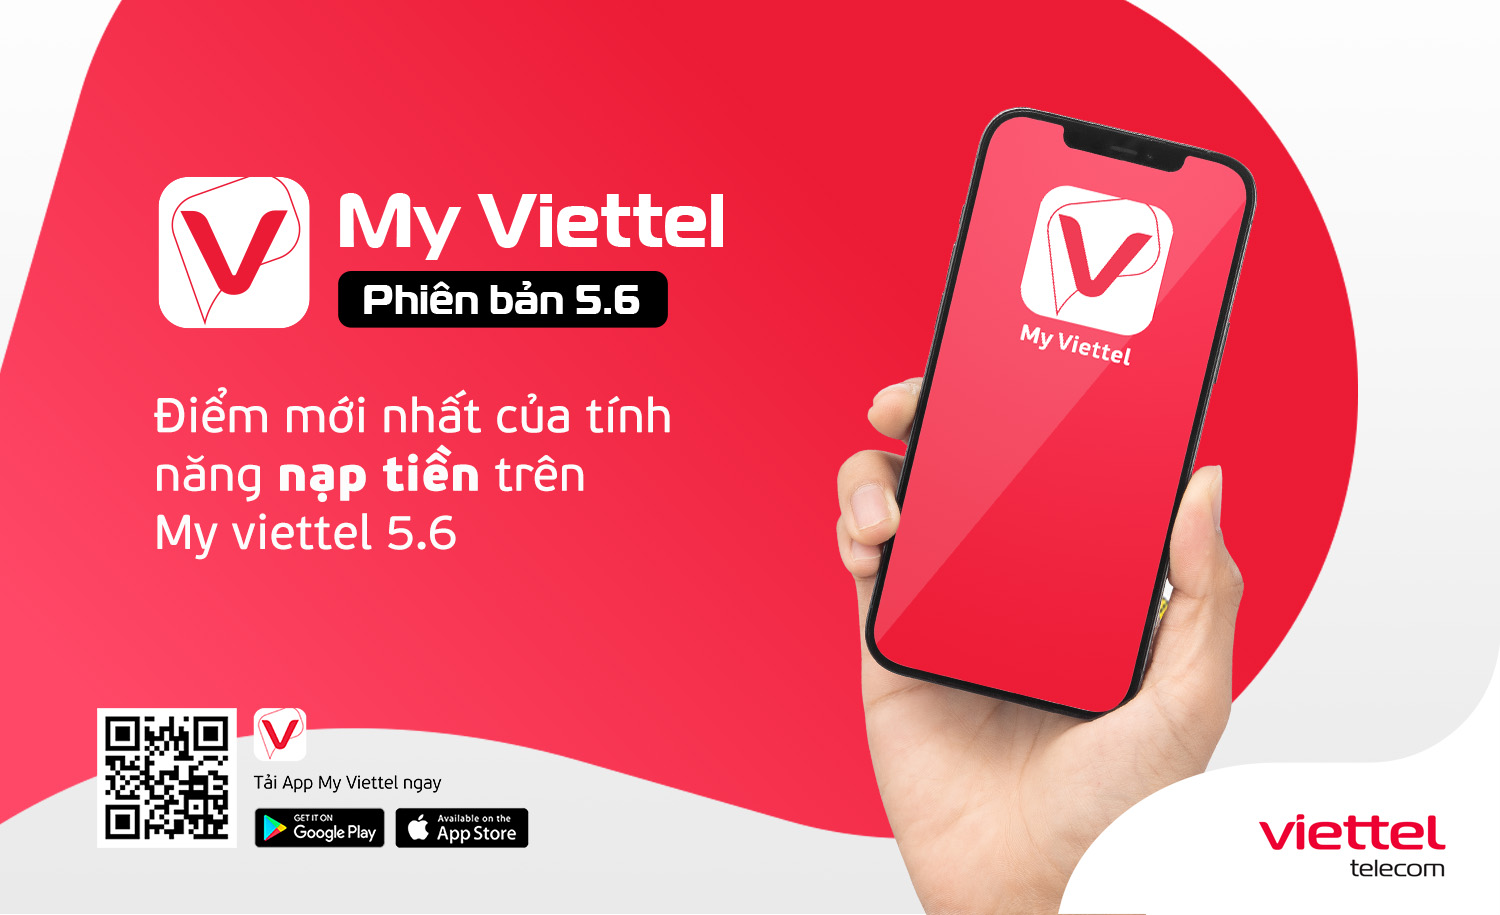 Điểm mới nhất của tính năng nạp tiền - thanh toán cước My Viettel phiên bản 5.6 mà người dùng chưa biết